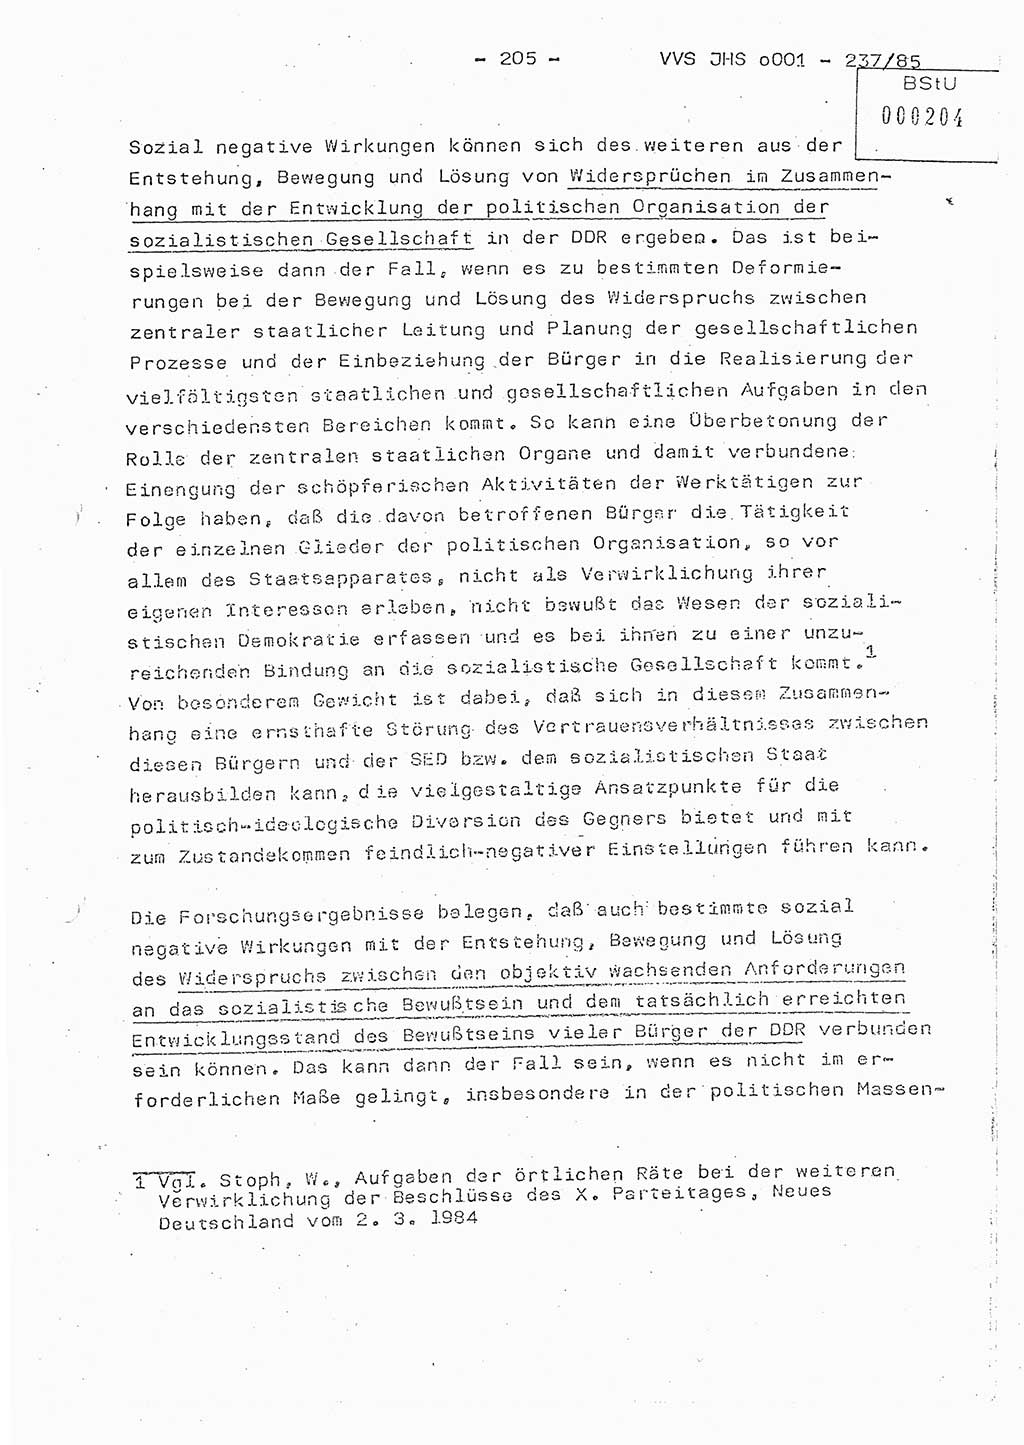 Dissertation Oberstleutnant Peter Jakulski (JHS), Oberstleutnat Christian Rudolph (HA Ⅸ), Major Horst Böttger (ZMD), Major Wolfgang Grüneberg (JHS), Major Albert Meutsch (JHS), Ministerium für Staatssicherheit (MfS) [Deutsche Demokratische Republik (DDR)], Juristische Hochschule (JHS), Vertrauliche Verschlußsache (VVS) o001-237/85, Potsdam 1985, Seite 205 (Diss. MfS DDR JHS VVS o001-237/85 1985, S. 205)